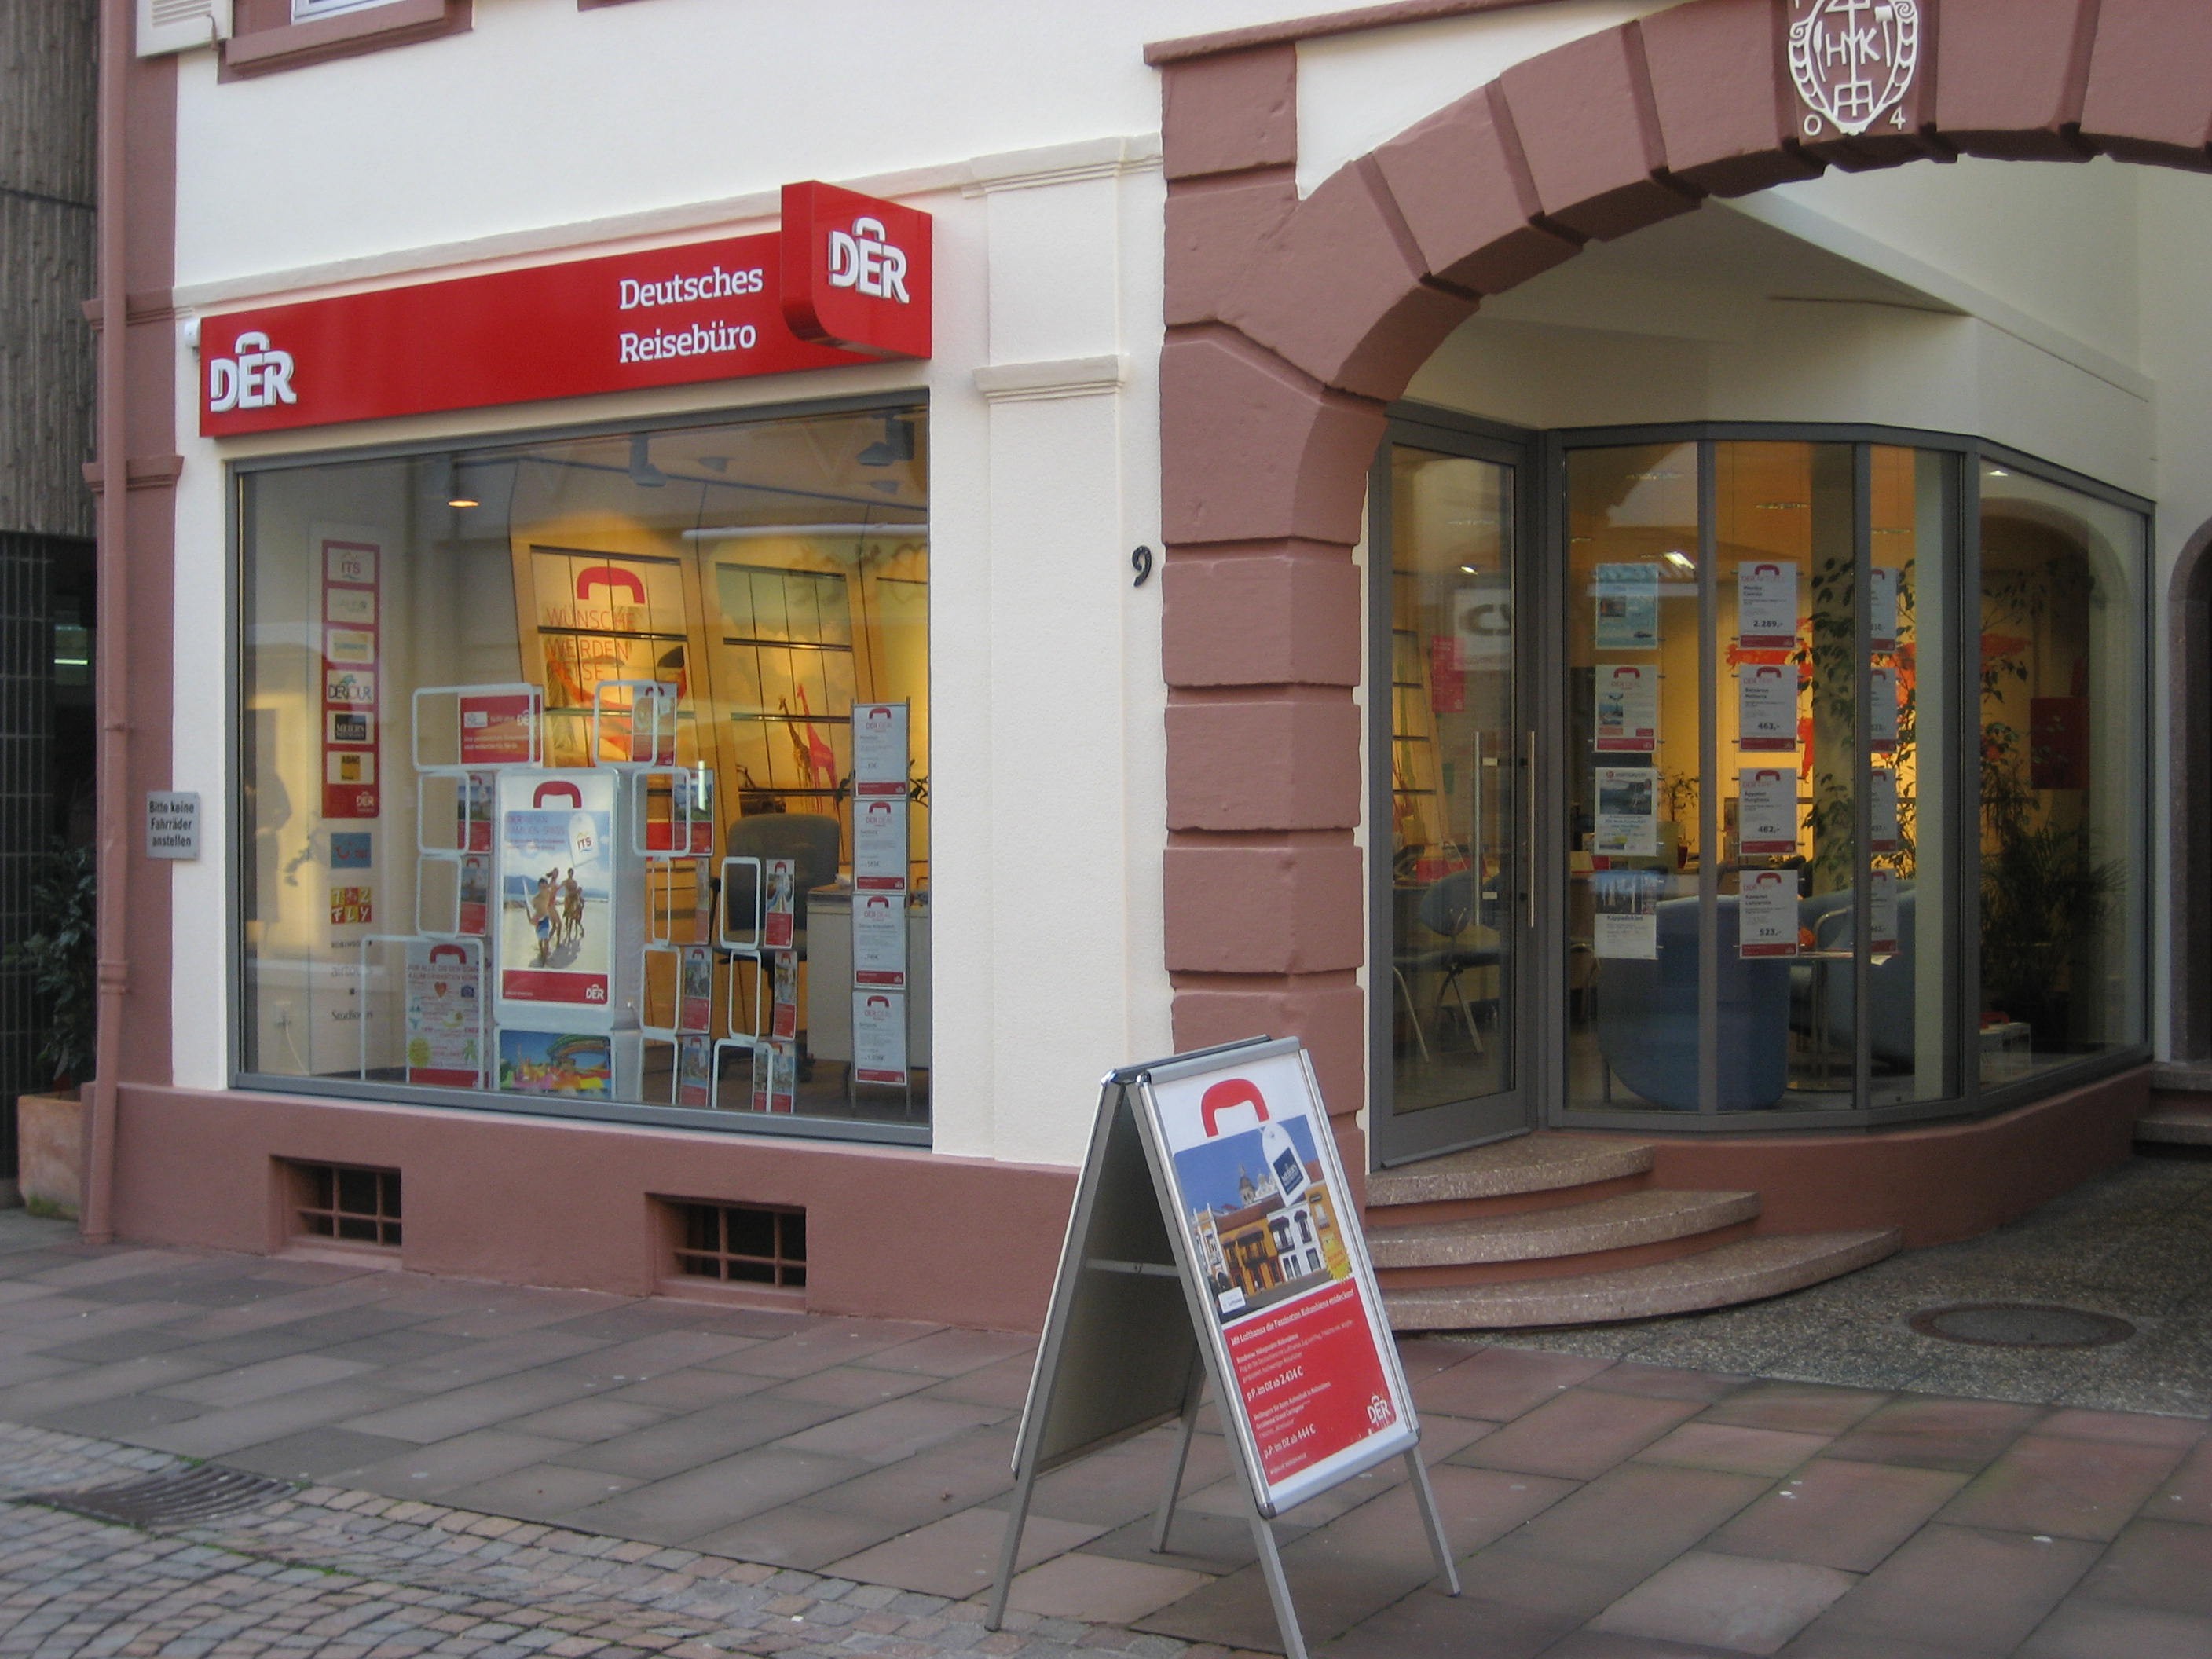 DERTOUR Reisebüro, Kronenstraße 9 in Ettlingen